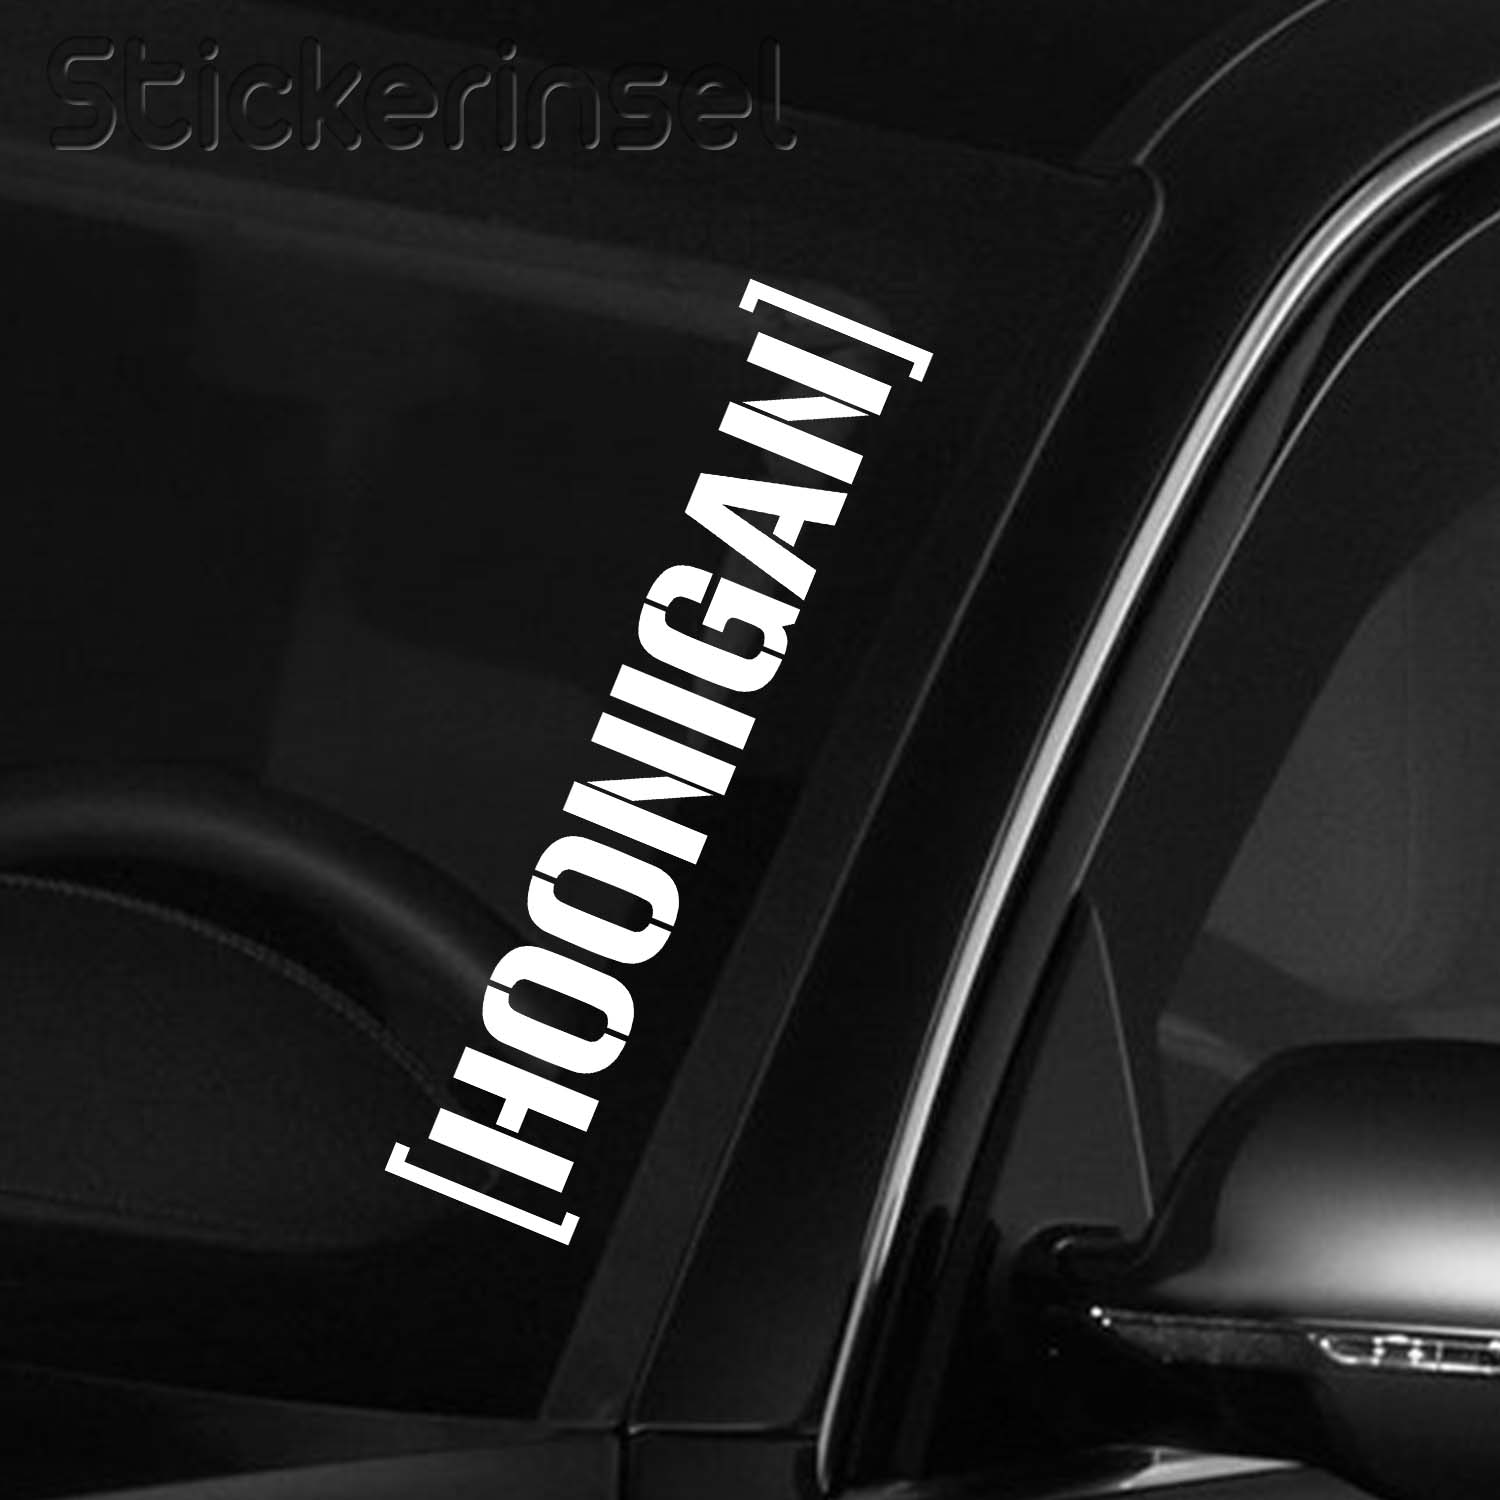 Hoonigan Frontscheibenaufkleber » Stickerinsel - Autoaufkleber und